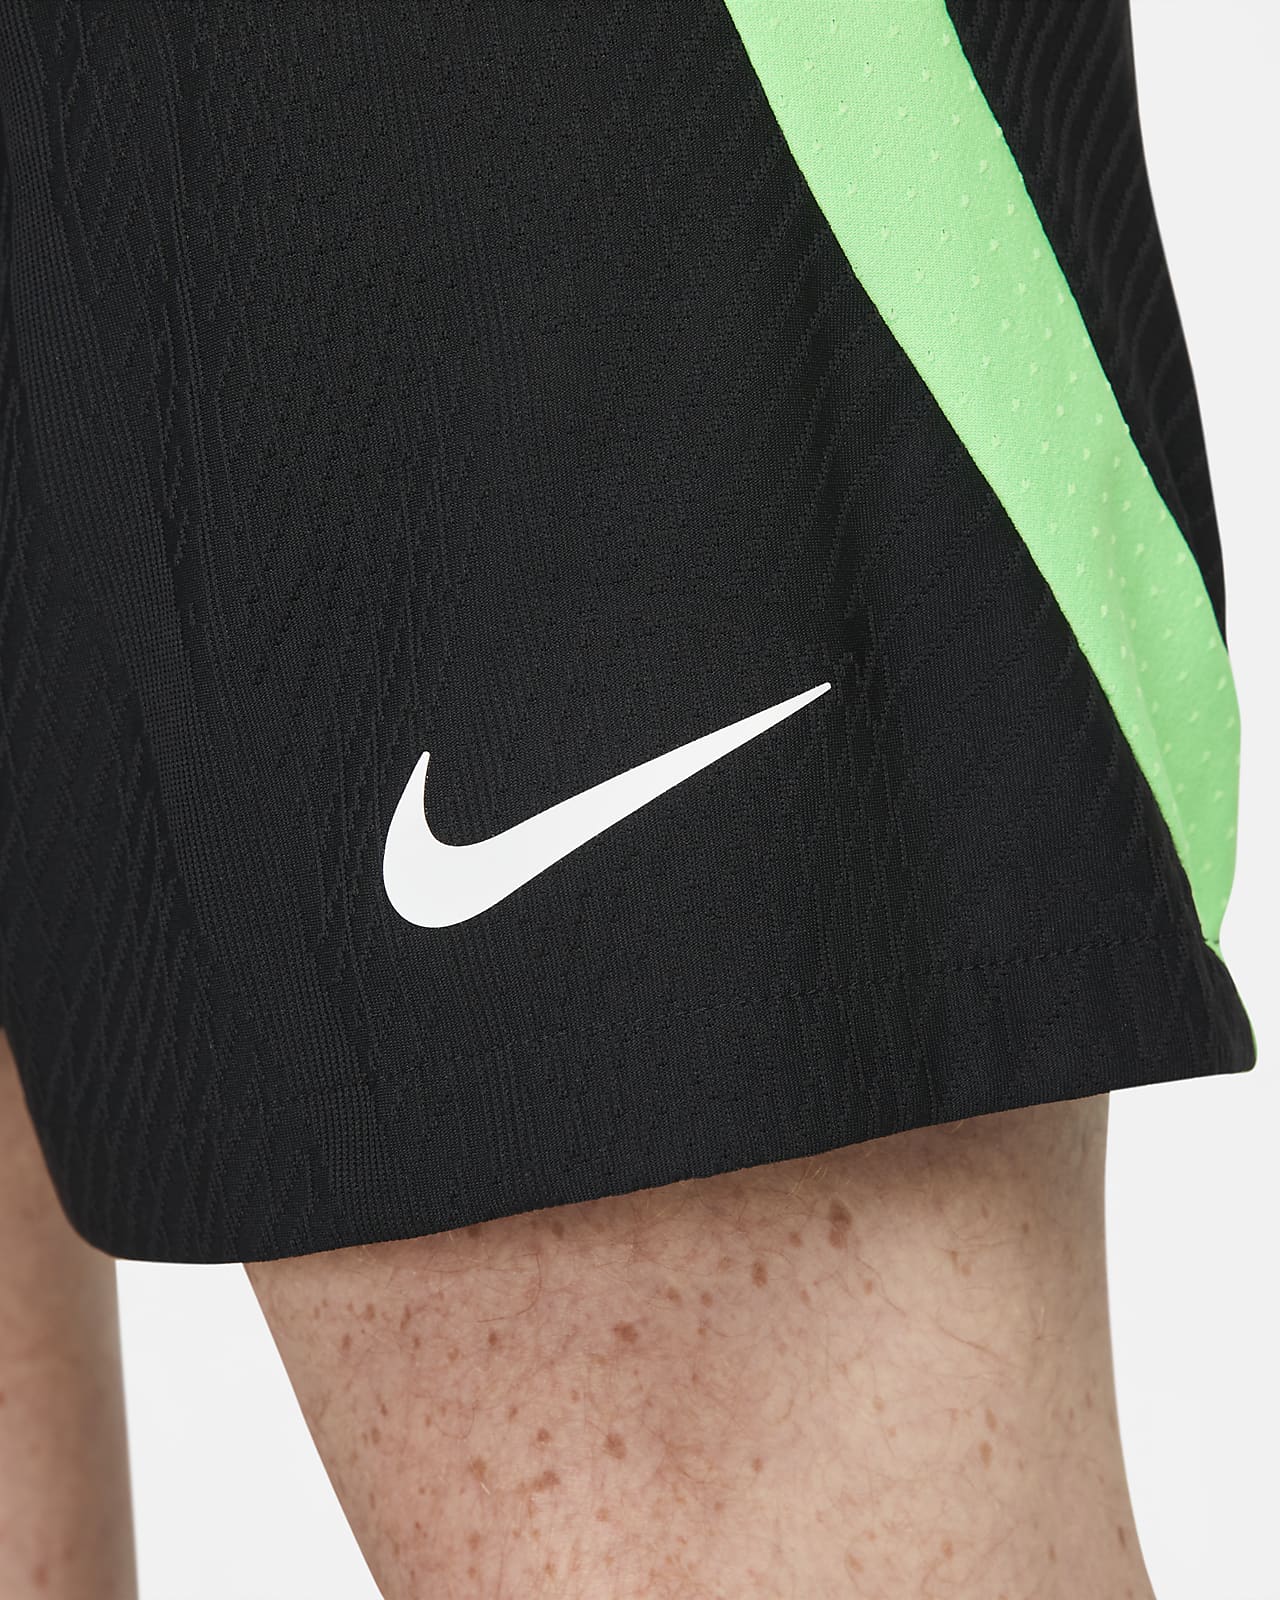 Nike Dri-Fit ADV Liverpool F.C Strike Elite Drill Top 1/2 Zip Jacket Mens  Small